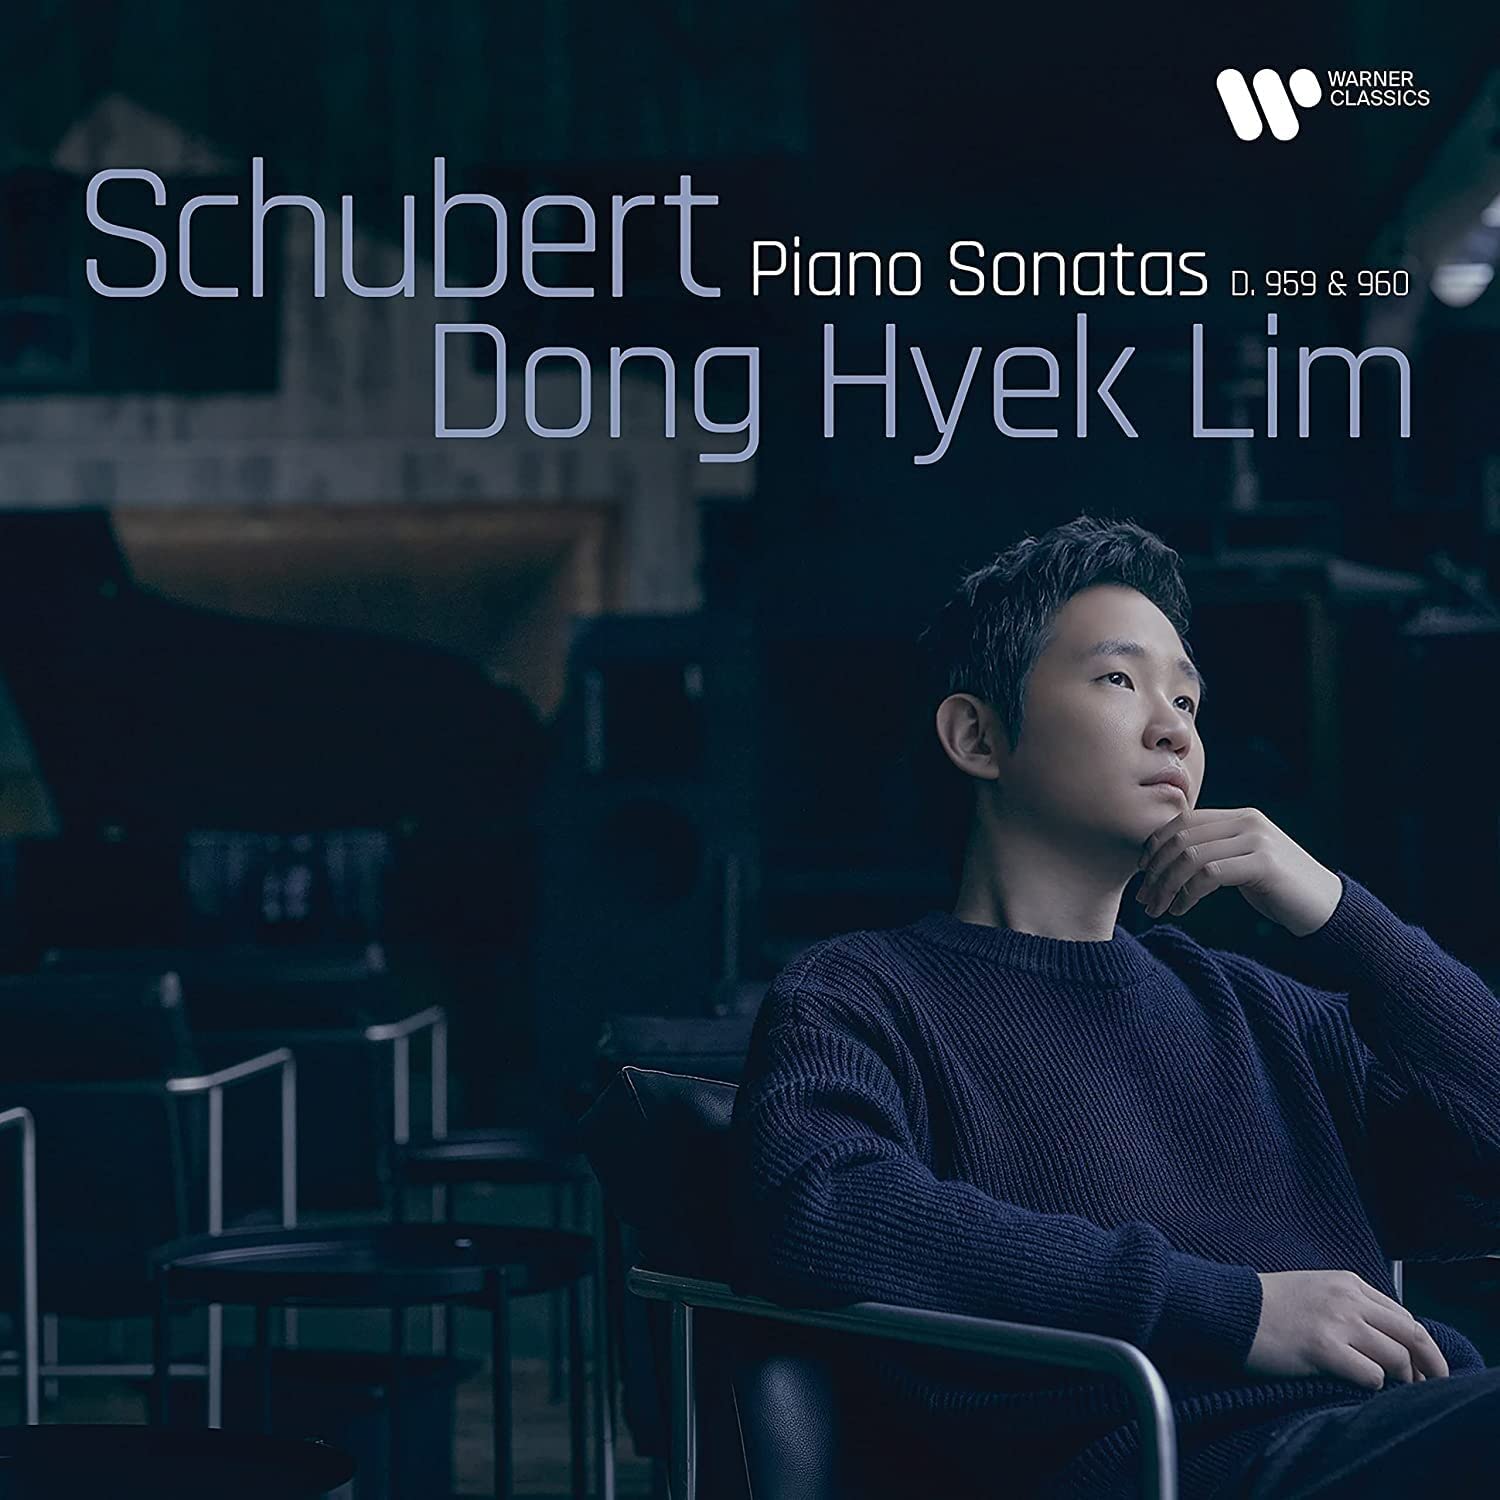 Schubert: Piano Sonatas D. 959 & 960 | Dong Hyek Lim